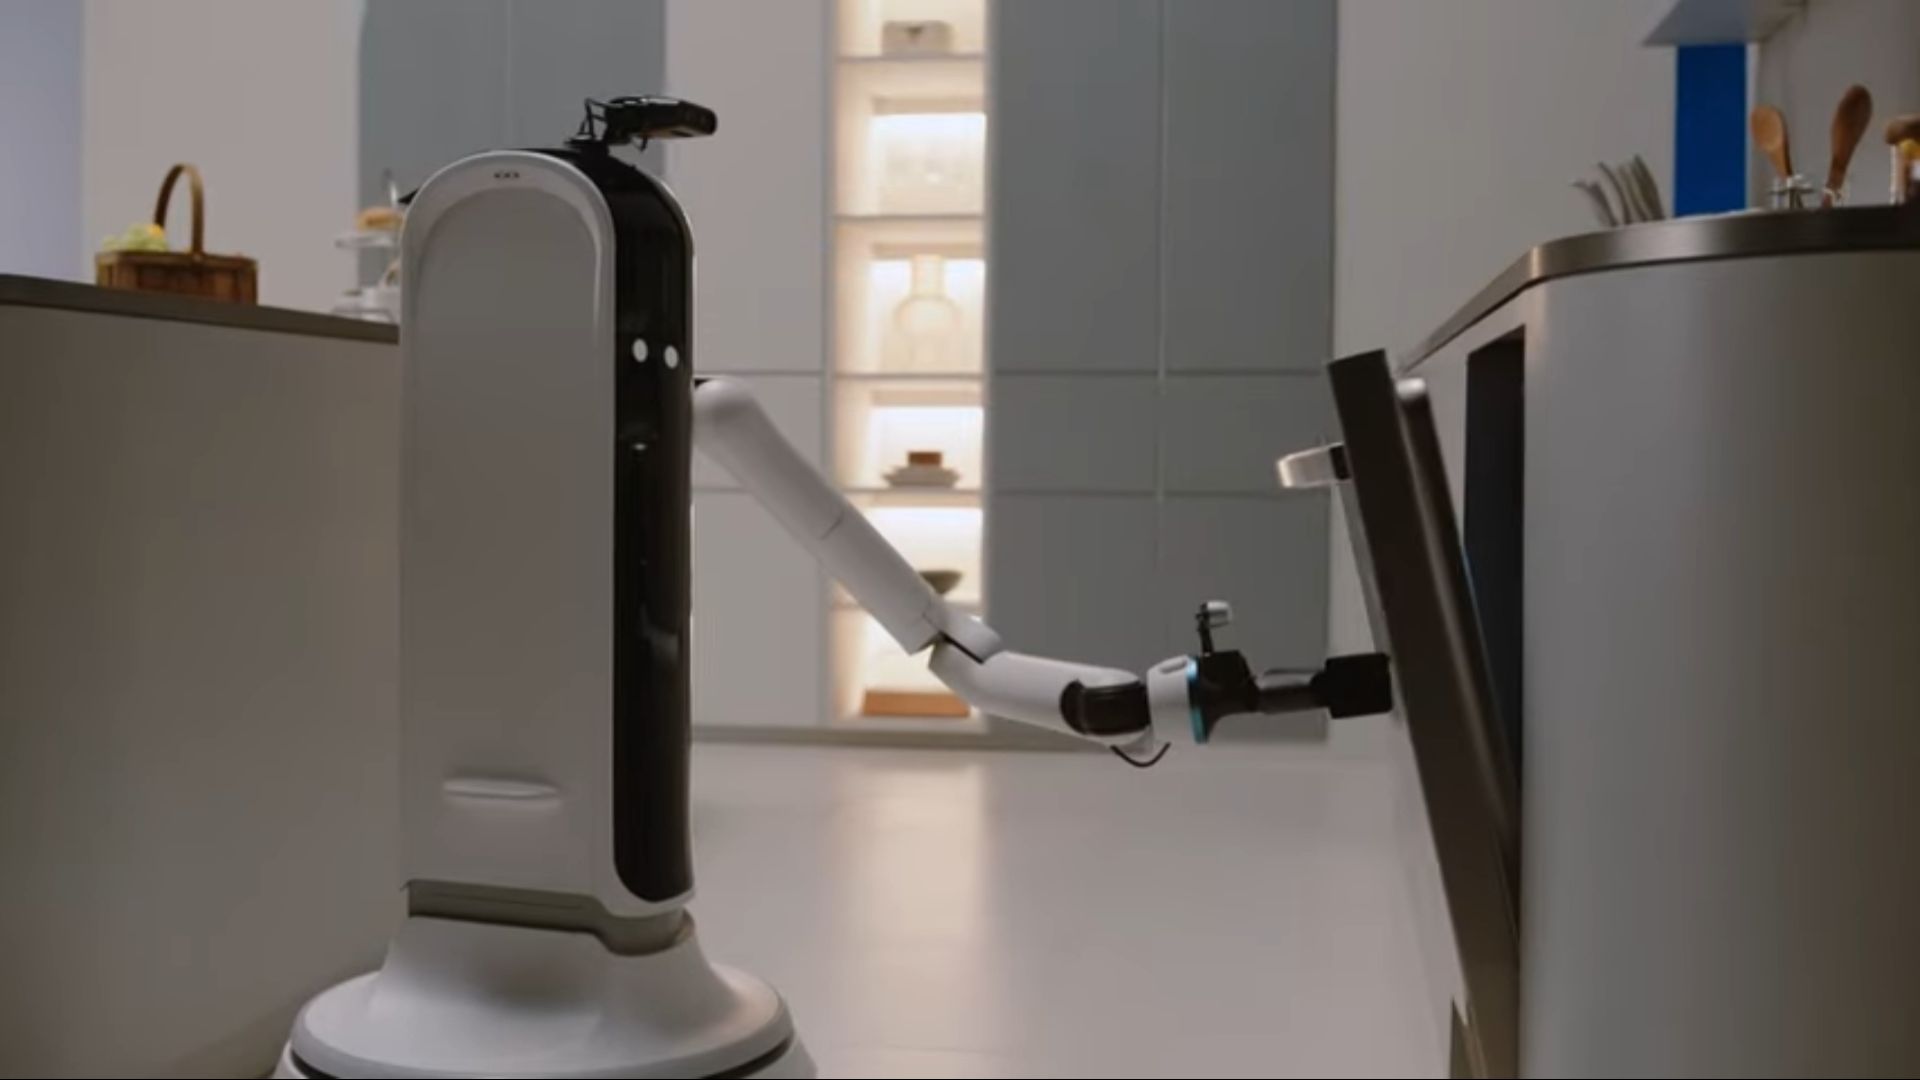 جاروبرقی رباتیک +JetBot 90 AI سامسونگ با قابلیت های فراوان معرفی شد